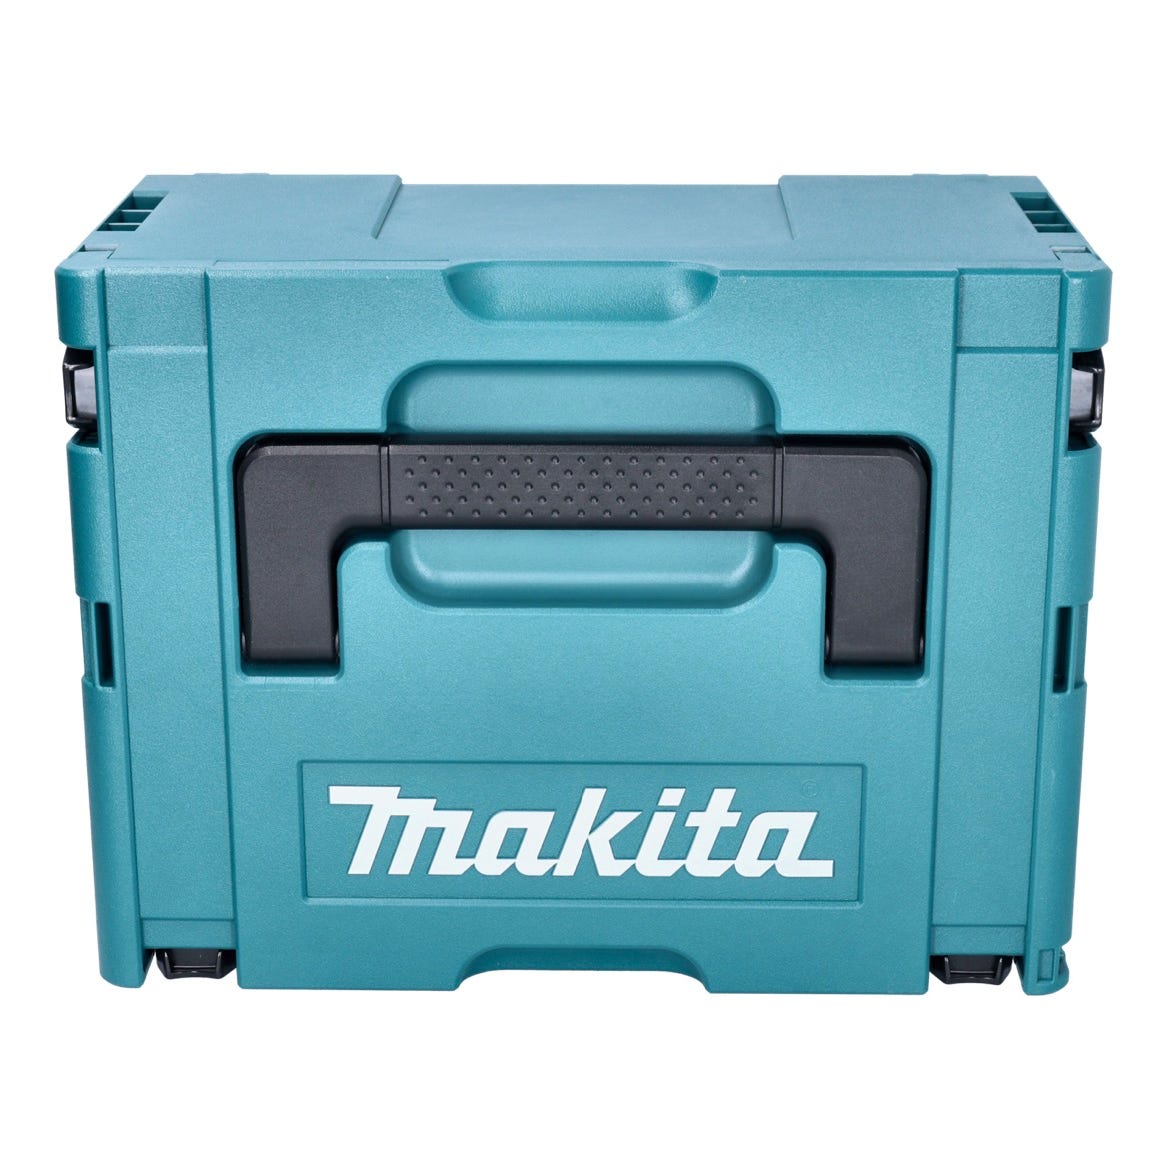 Makita DHR 183 RTJ marteau perforateur sans fil 18 V 1.7 J SDS plus brushless + 2x batteries rechargeables 5.0 Ah + chargeur + 2